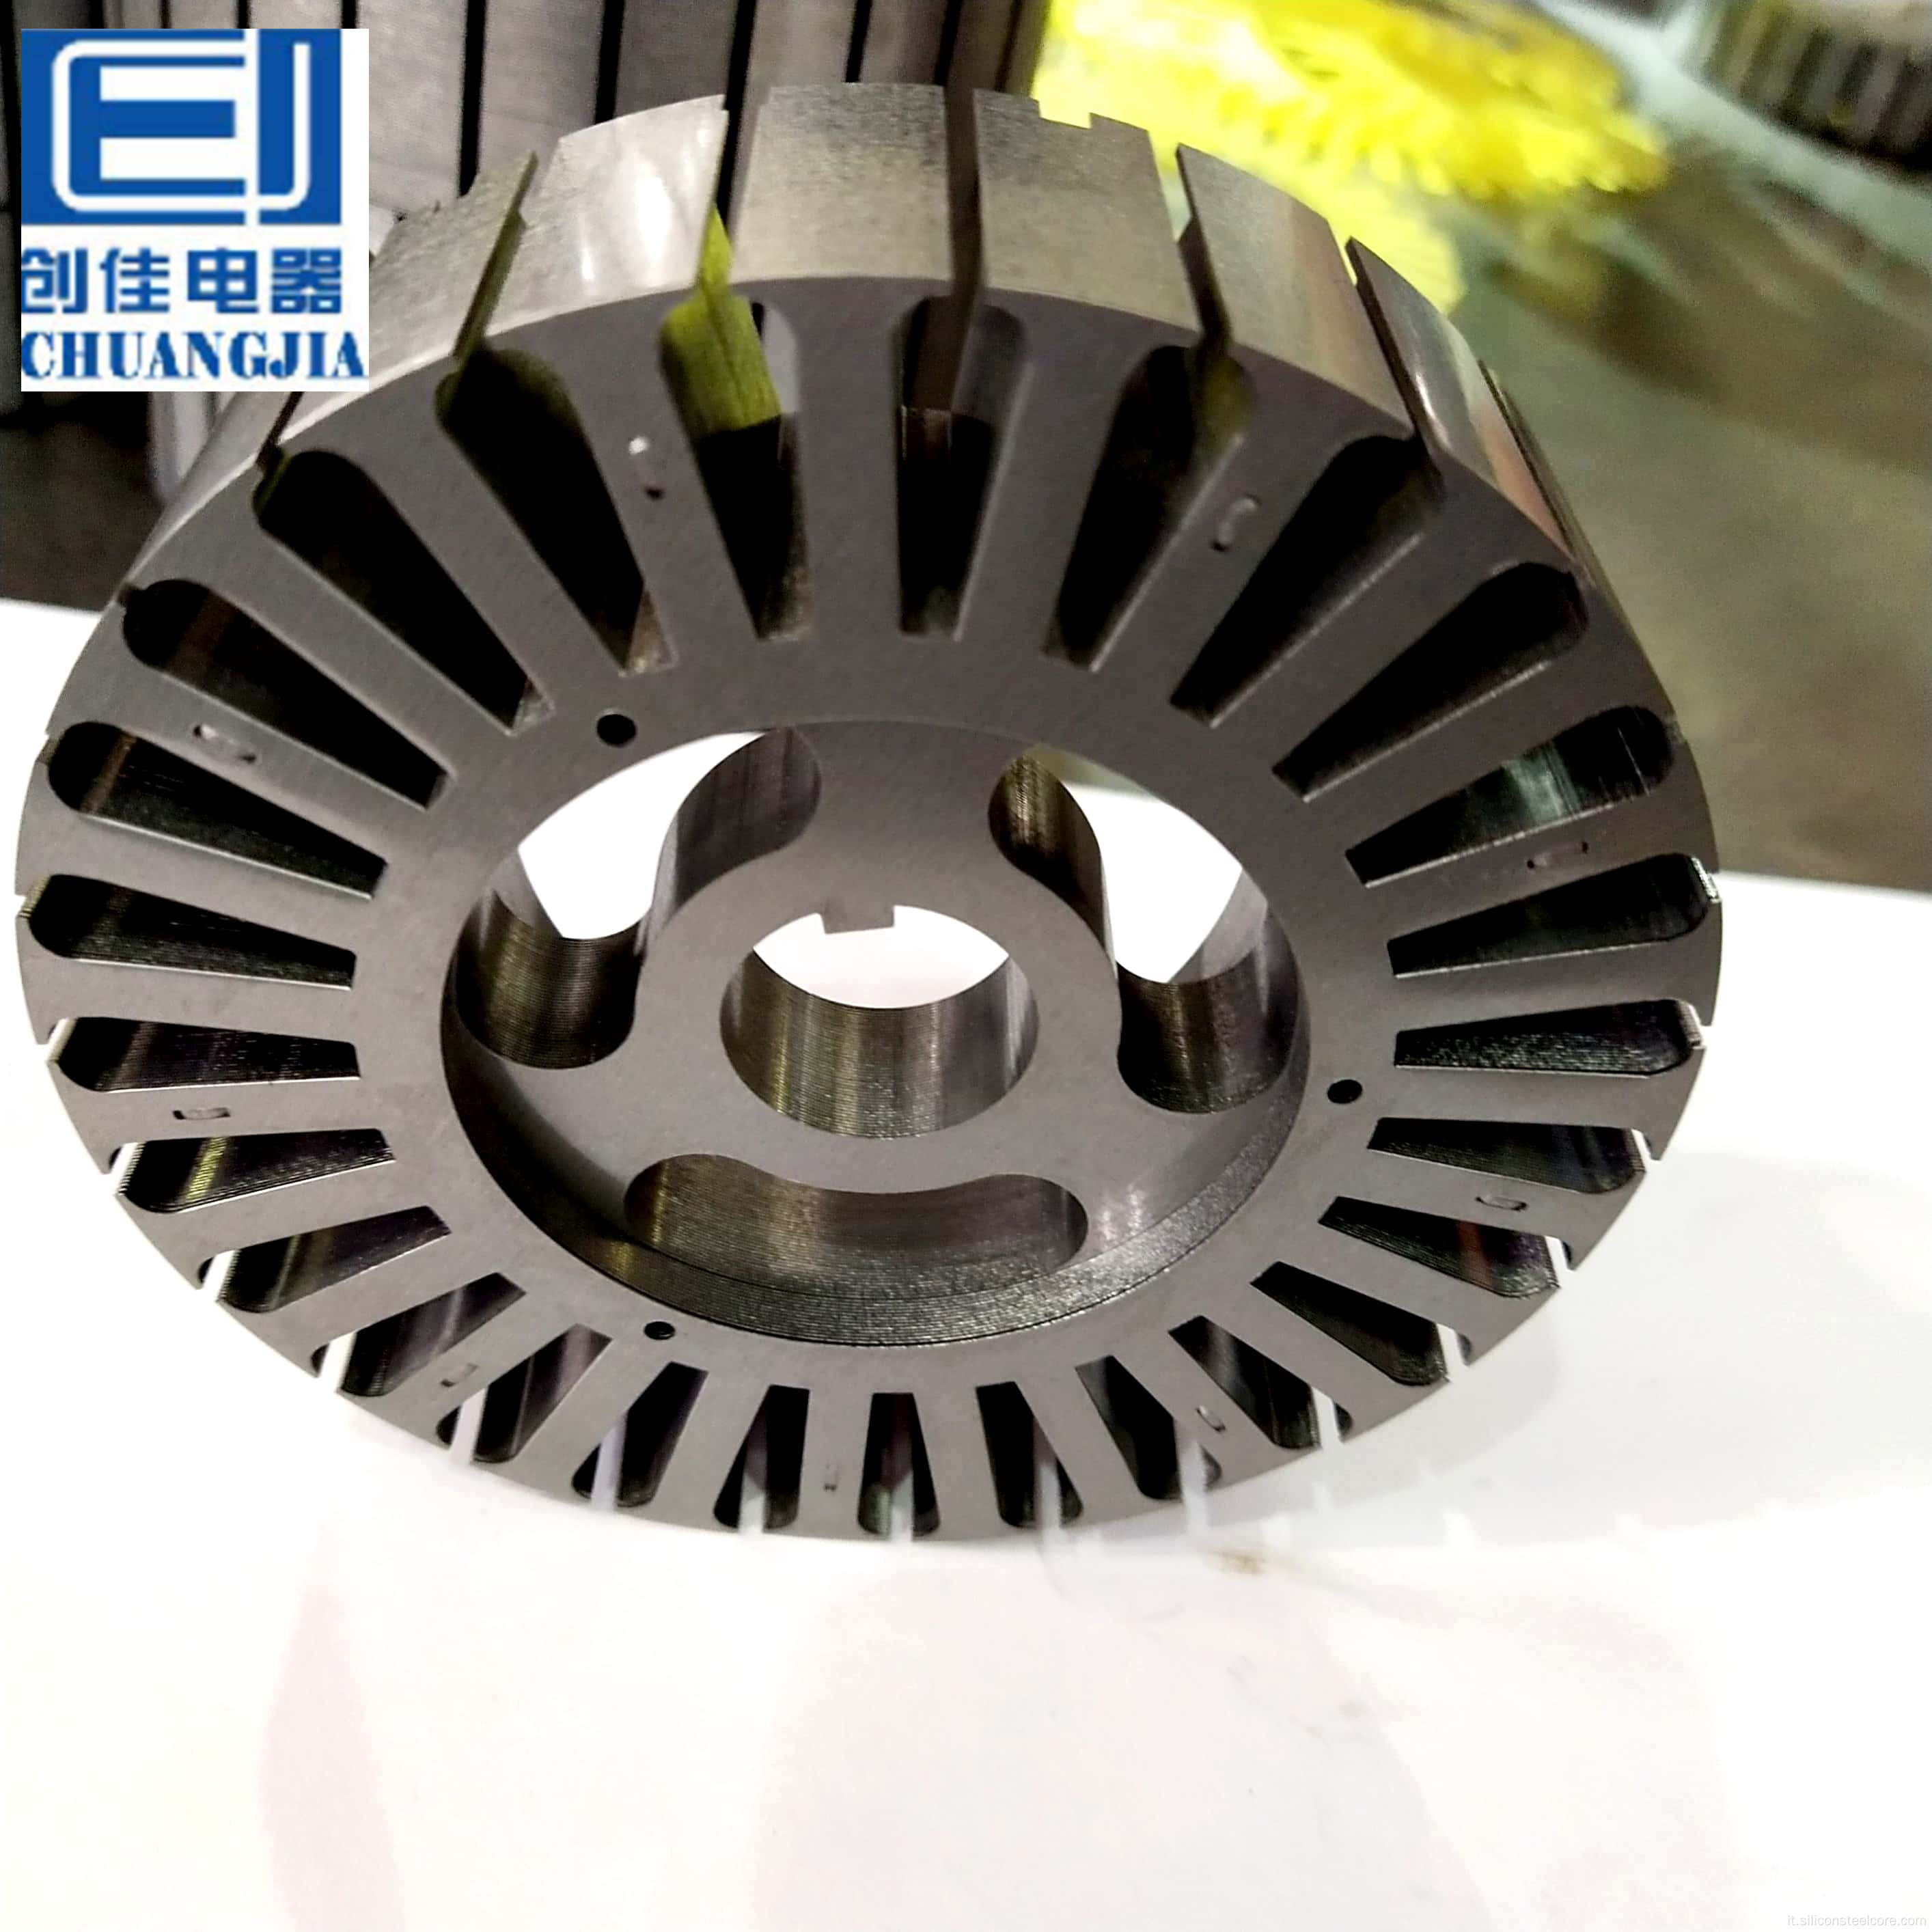 Jiangyina chuangjia a basso prezzo stabilimento di fornitura di fornitura e acciaio silicio laminato da rotore